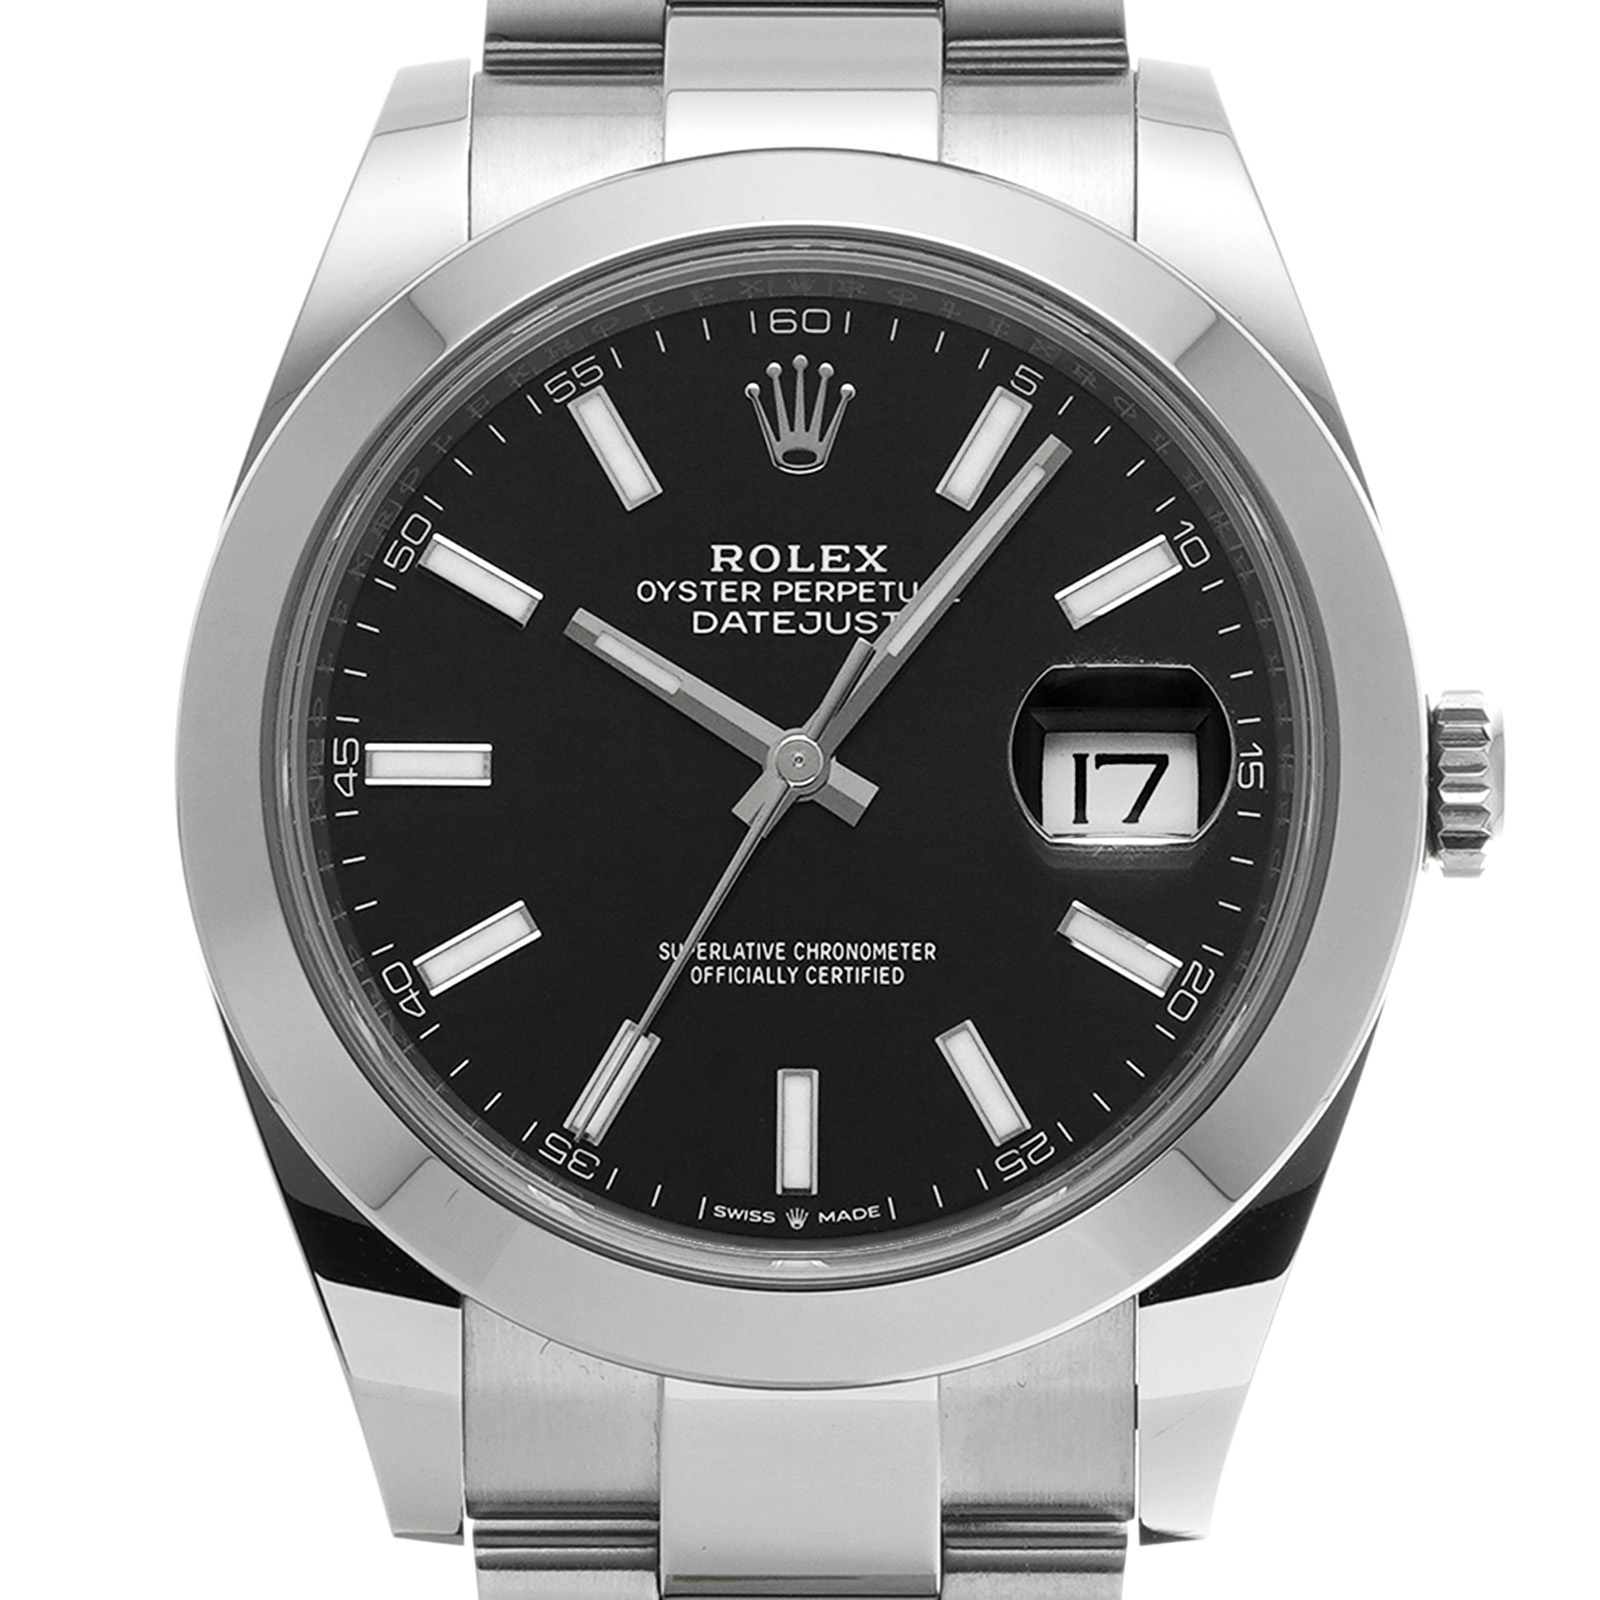 ロレックス ROLEX 126300 ランダムシリアル ブライトブラック メンズ 腕時計